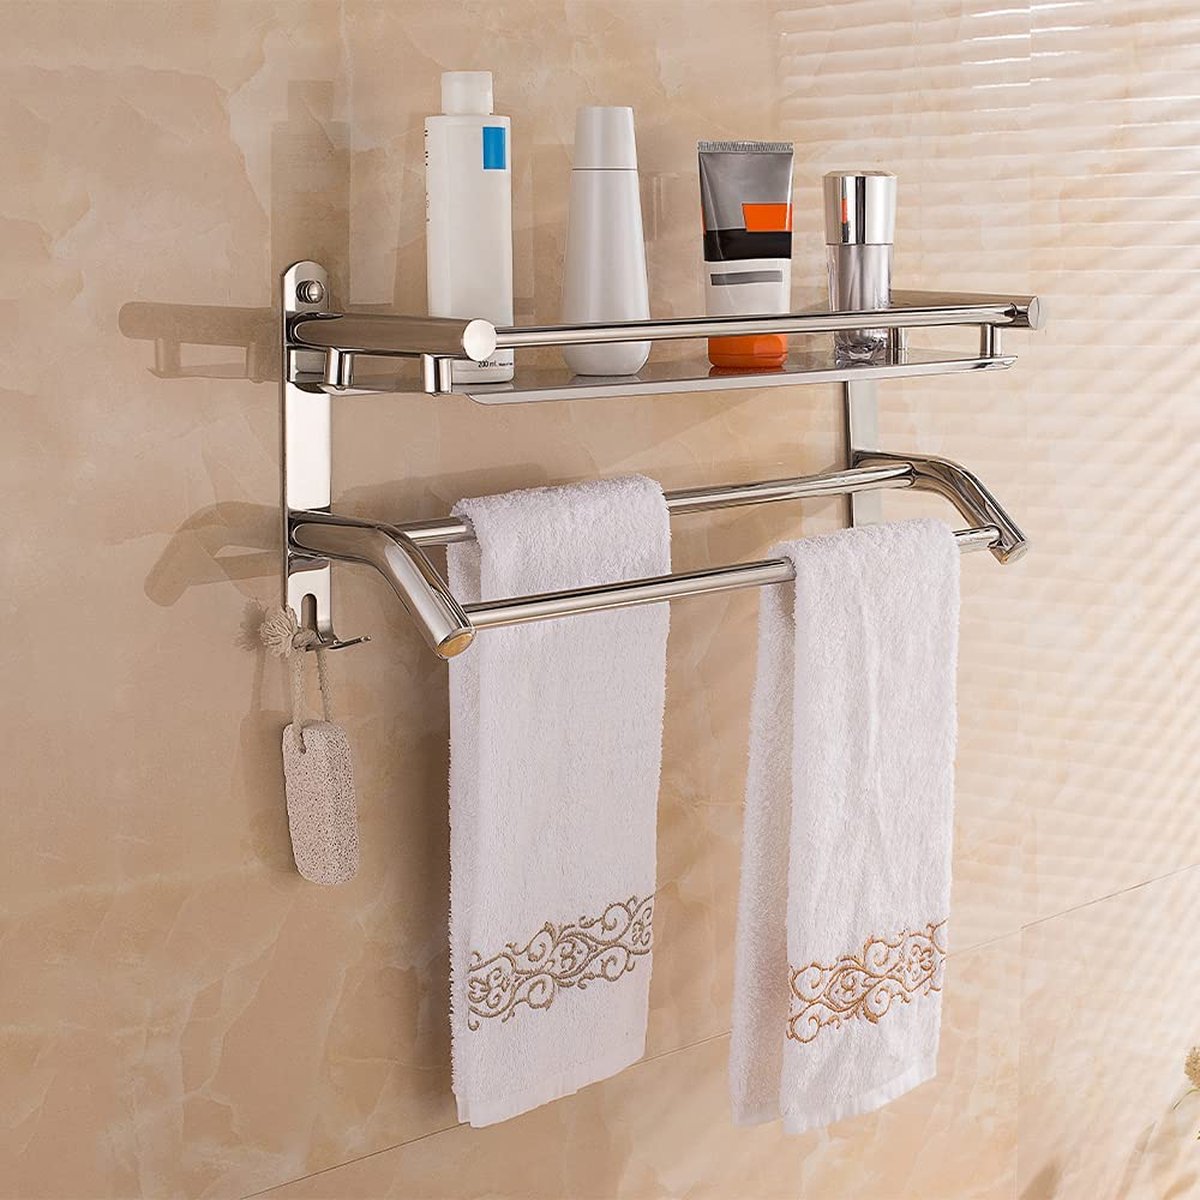 Handdoekstang chroom handdoekstang roestvrij staal met planchet en haak handdoekstang badkamer 59 cm handdoekstang voor badkamer keuken toilet